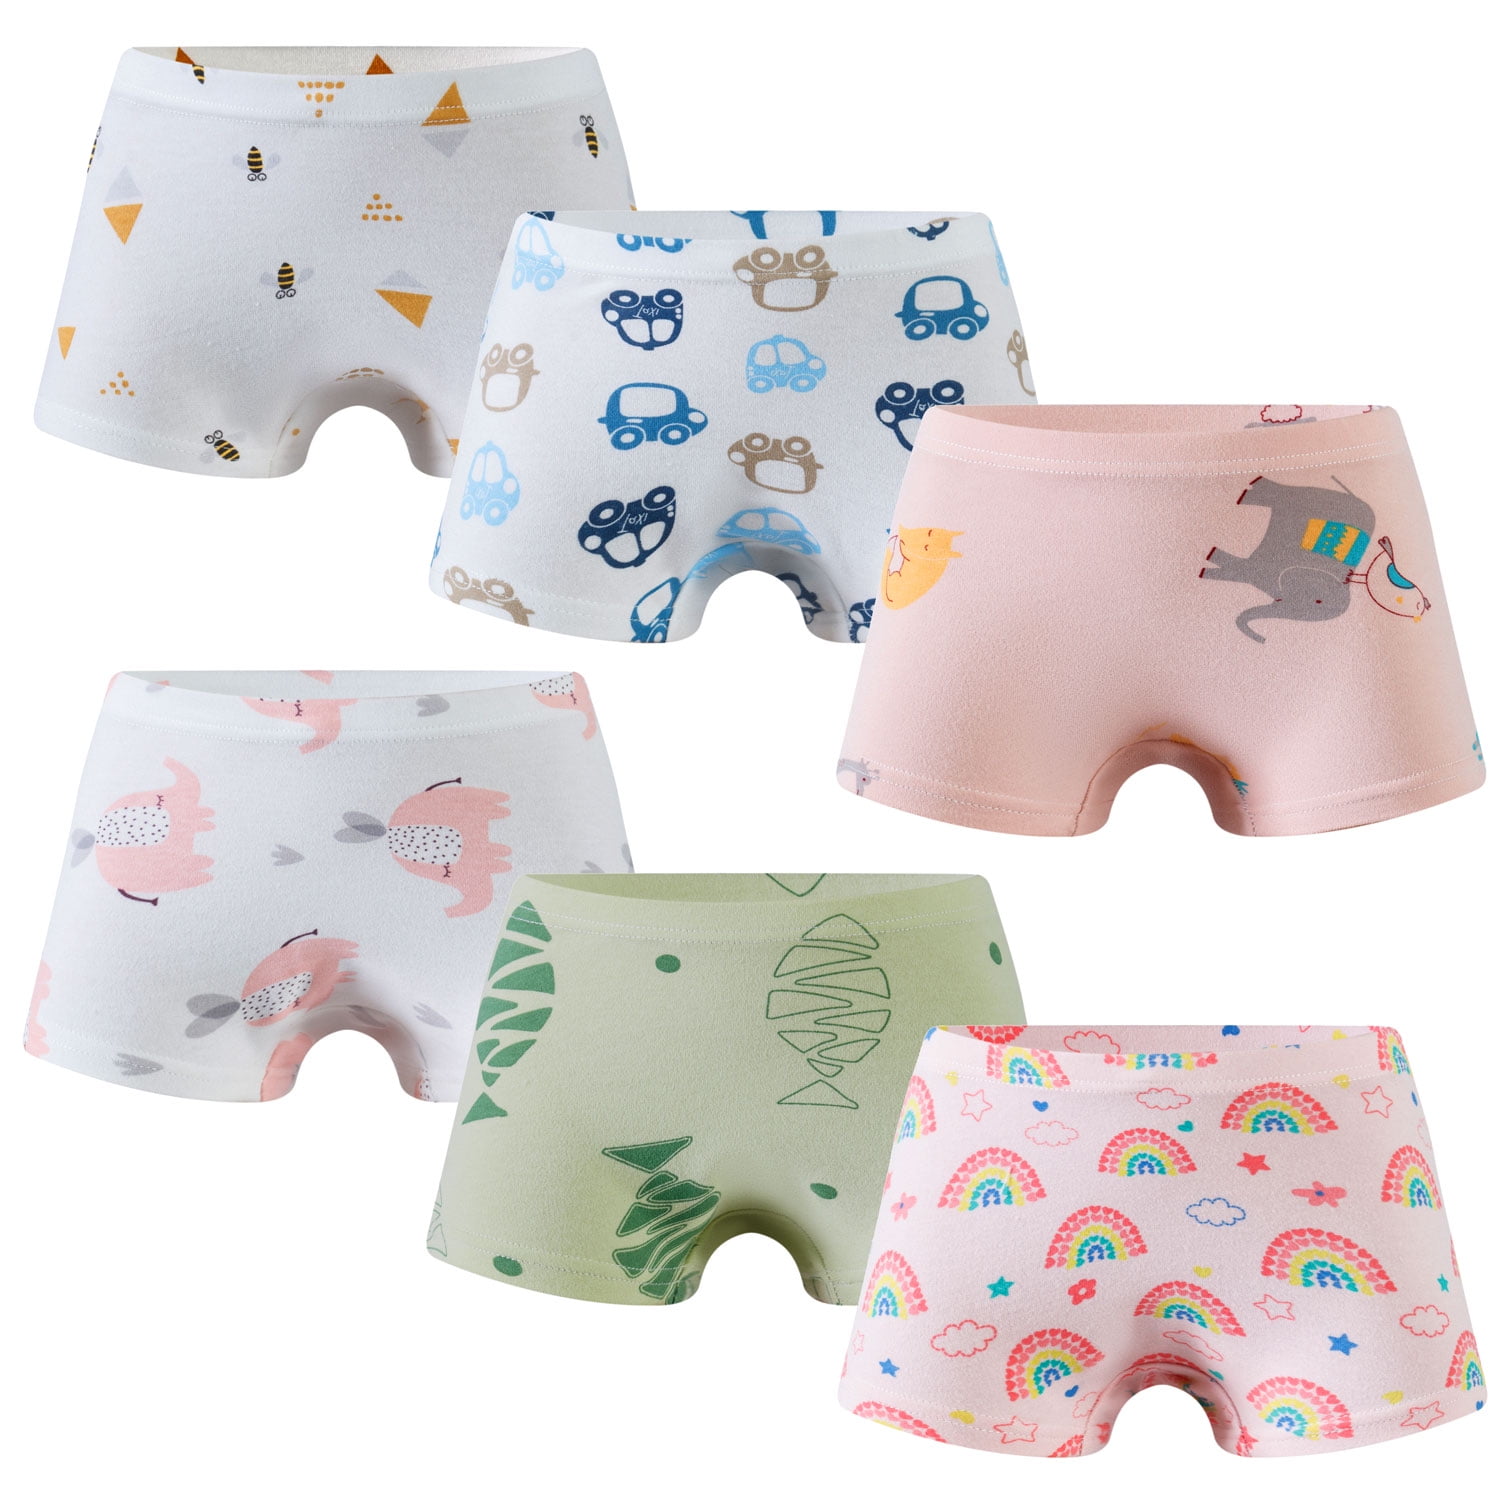 SILVERCELL Little Boys Soft Cotton Underwear Toddler Kids Dinosaur